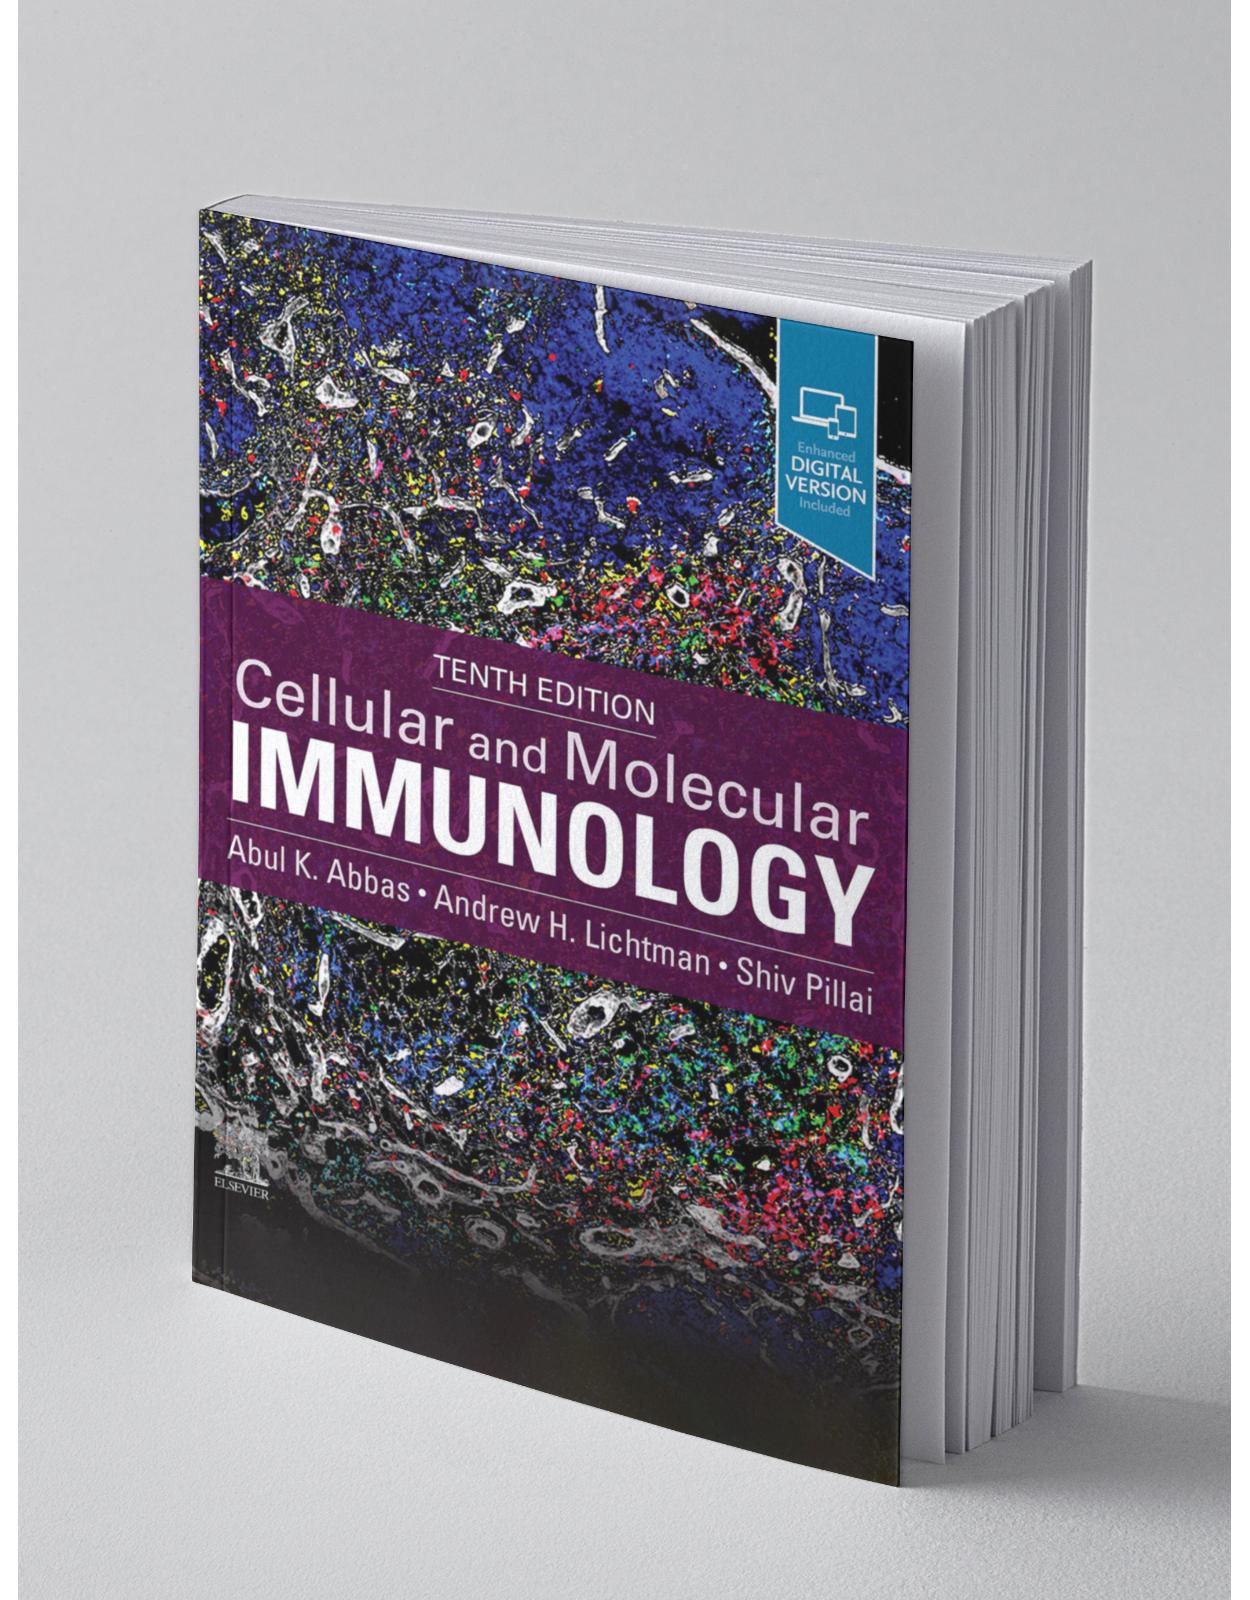 Cellular and Molecular Immunology 10th editiom